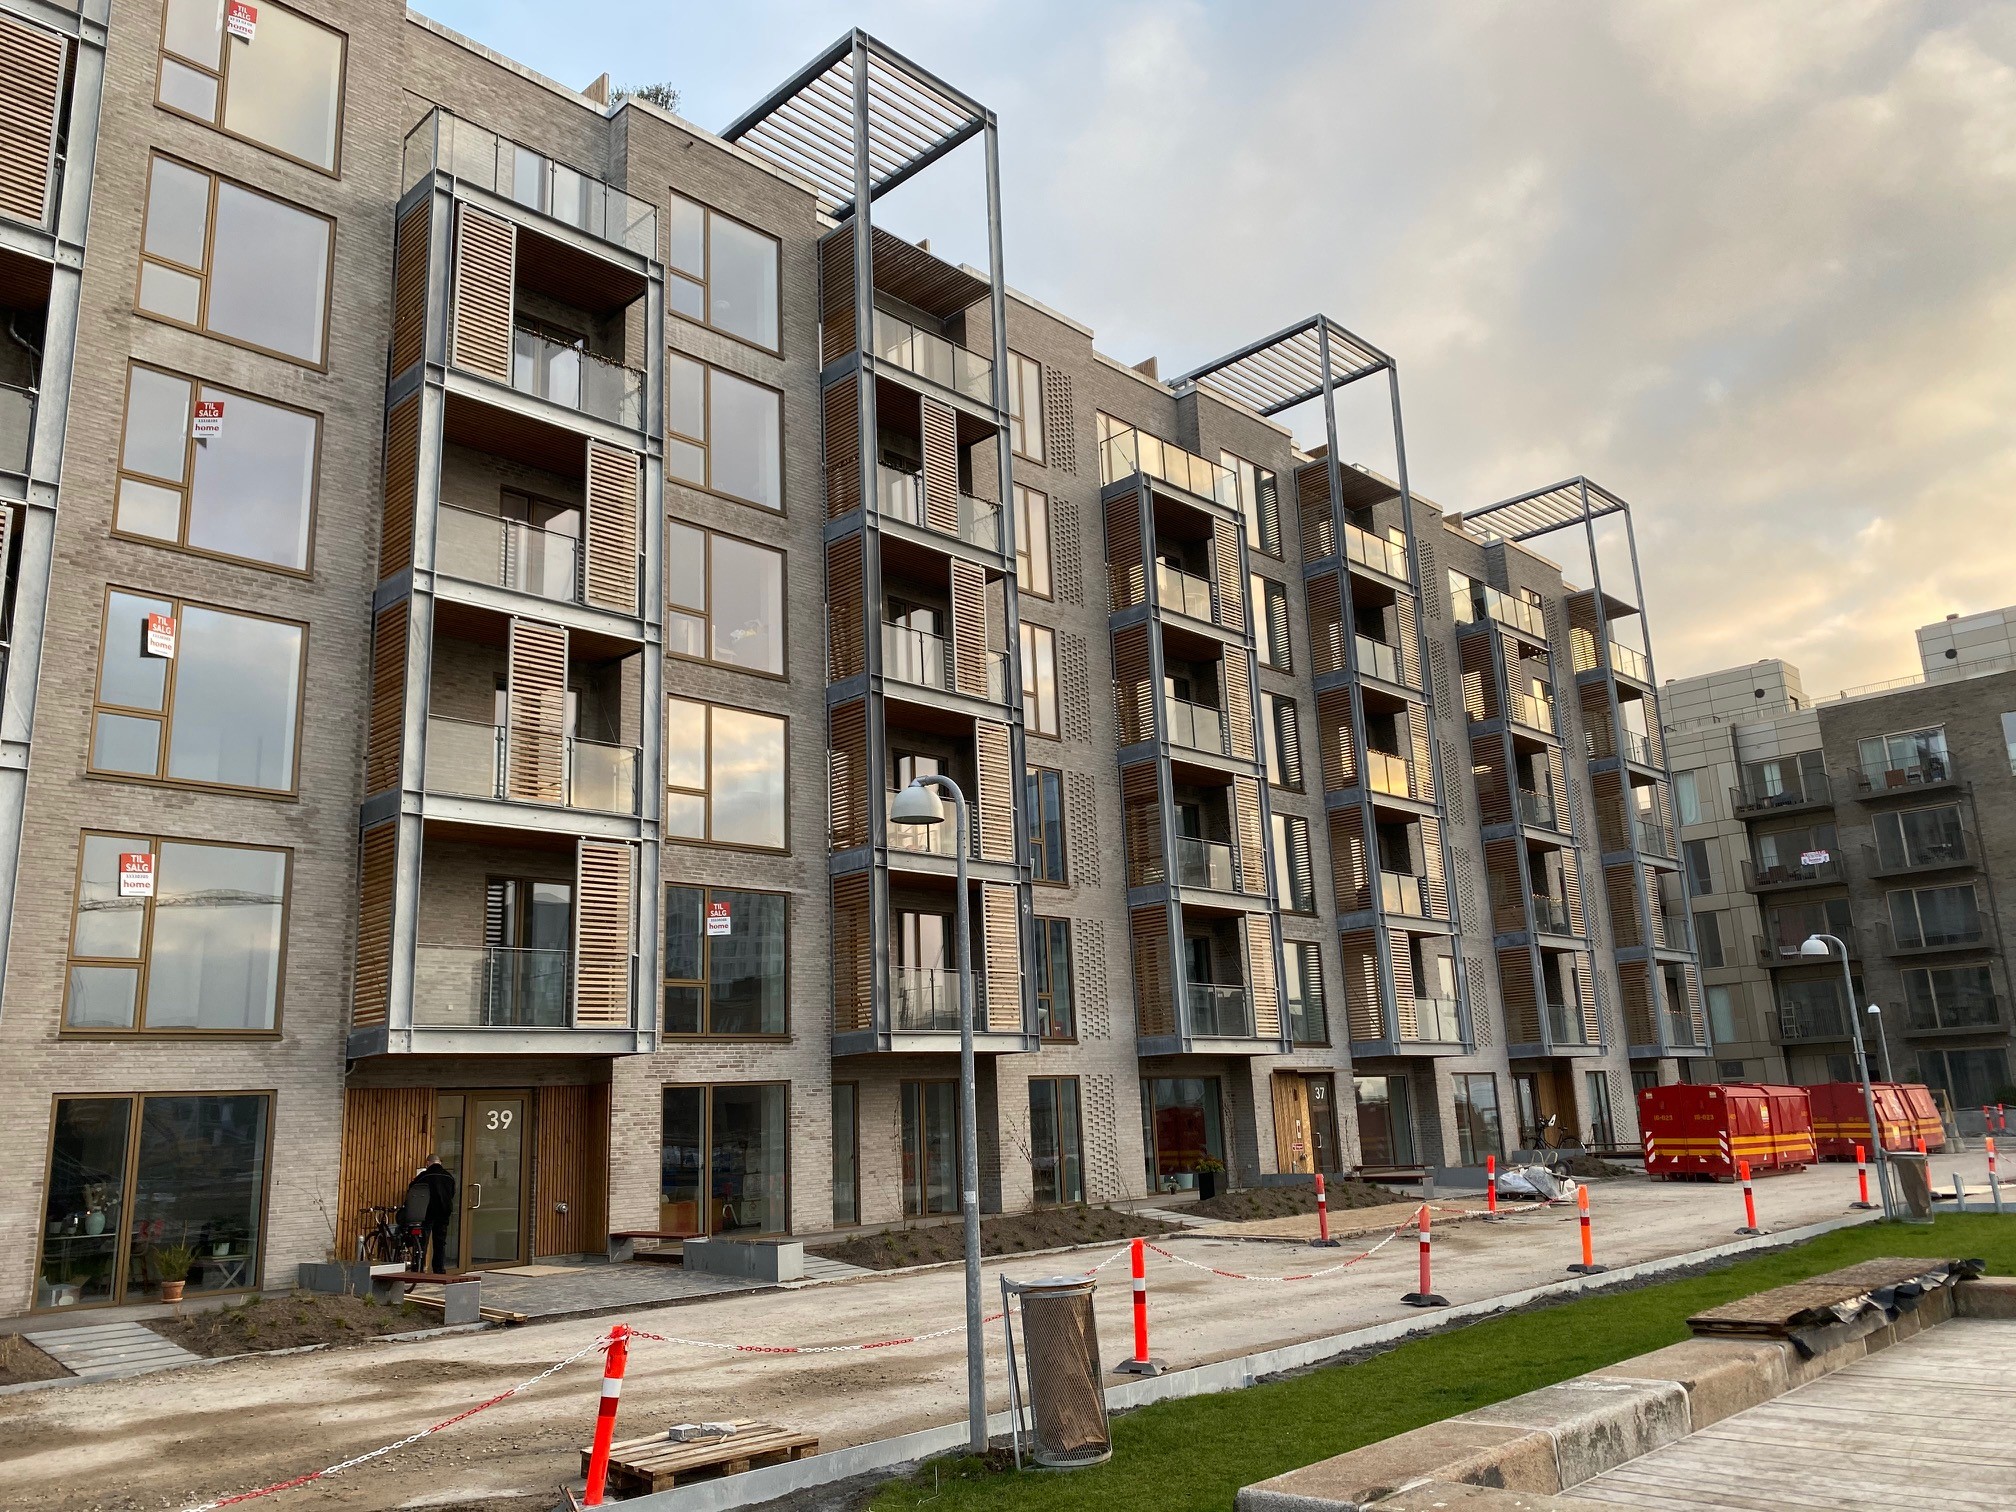 CASA udvikler opfører bæredygtigt boligkvarter Brøndby | CASA A/S